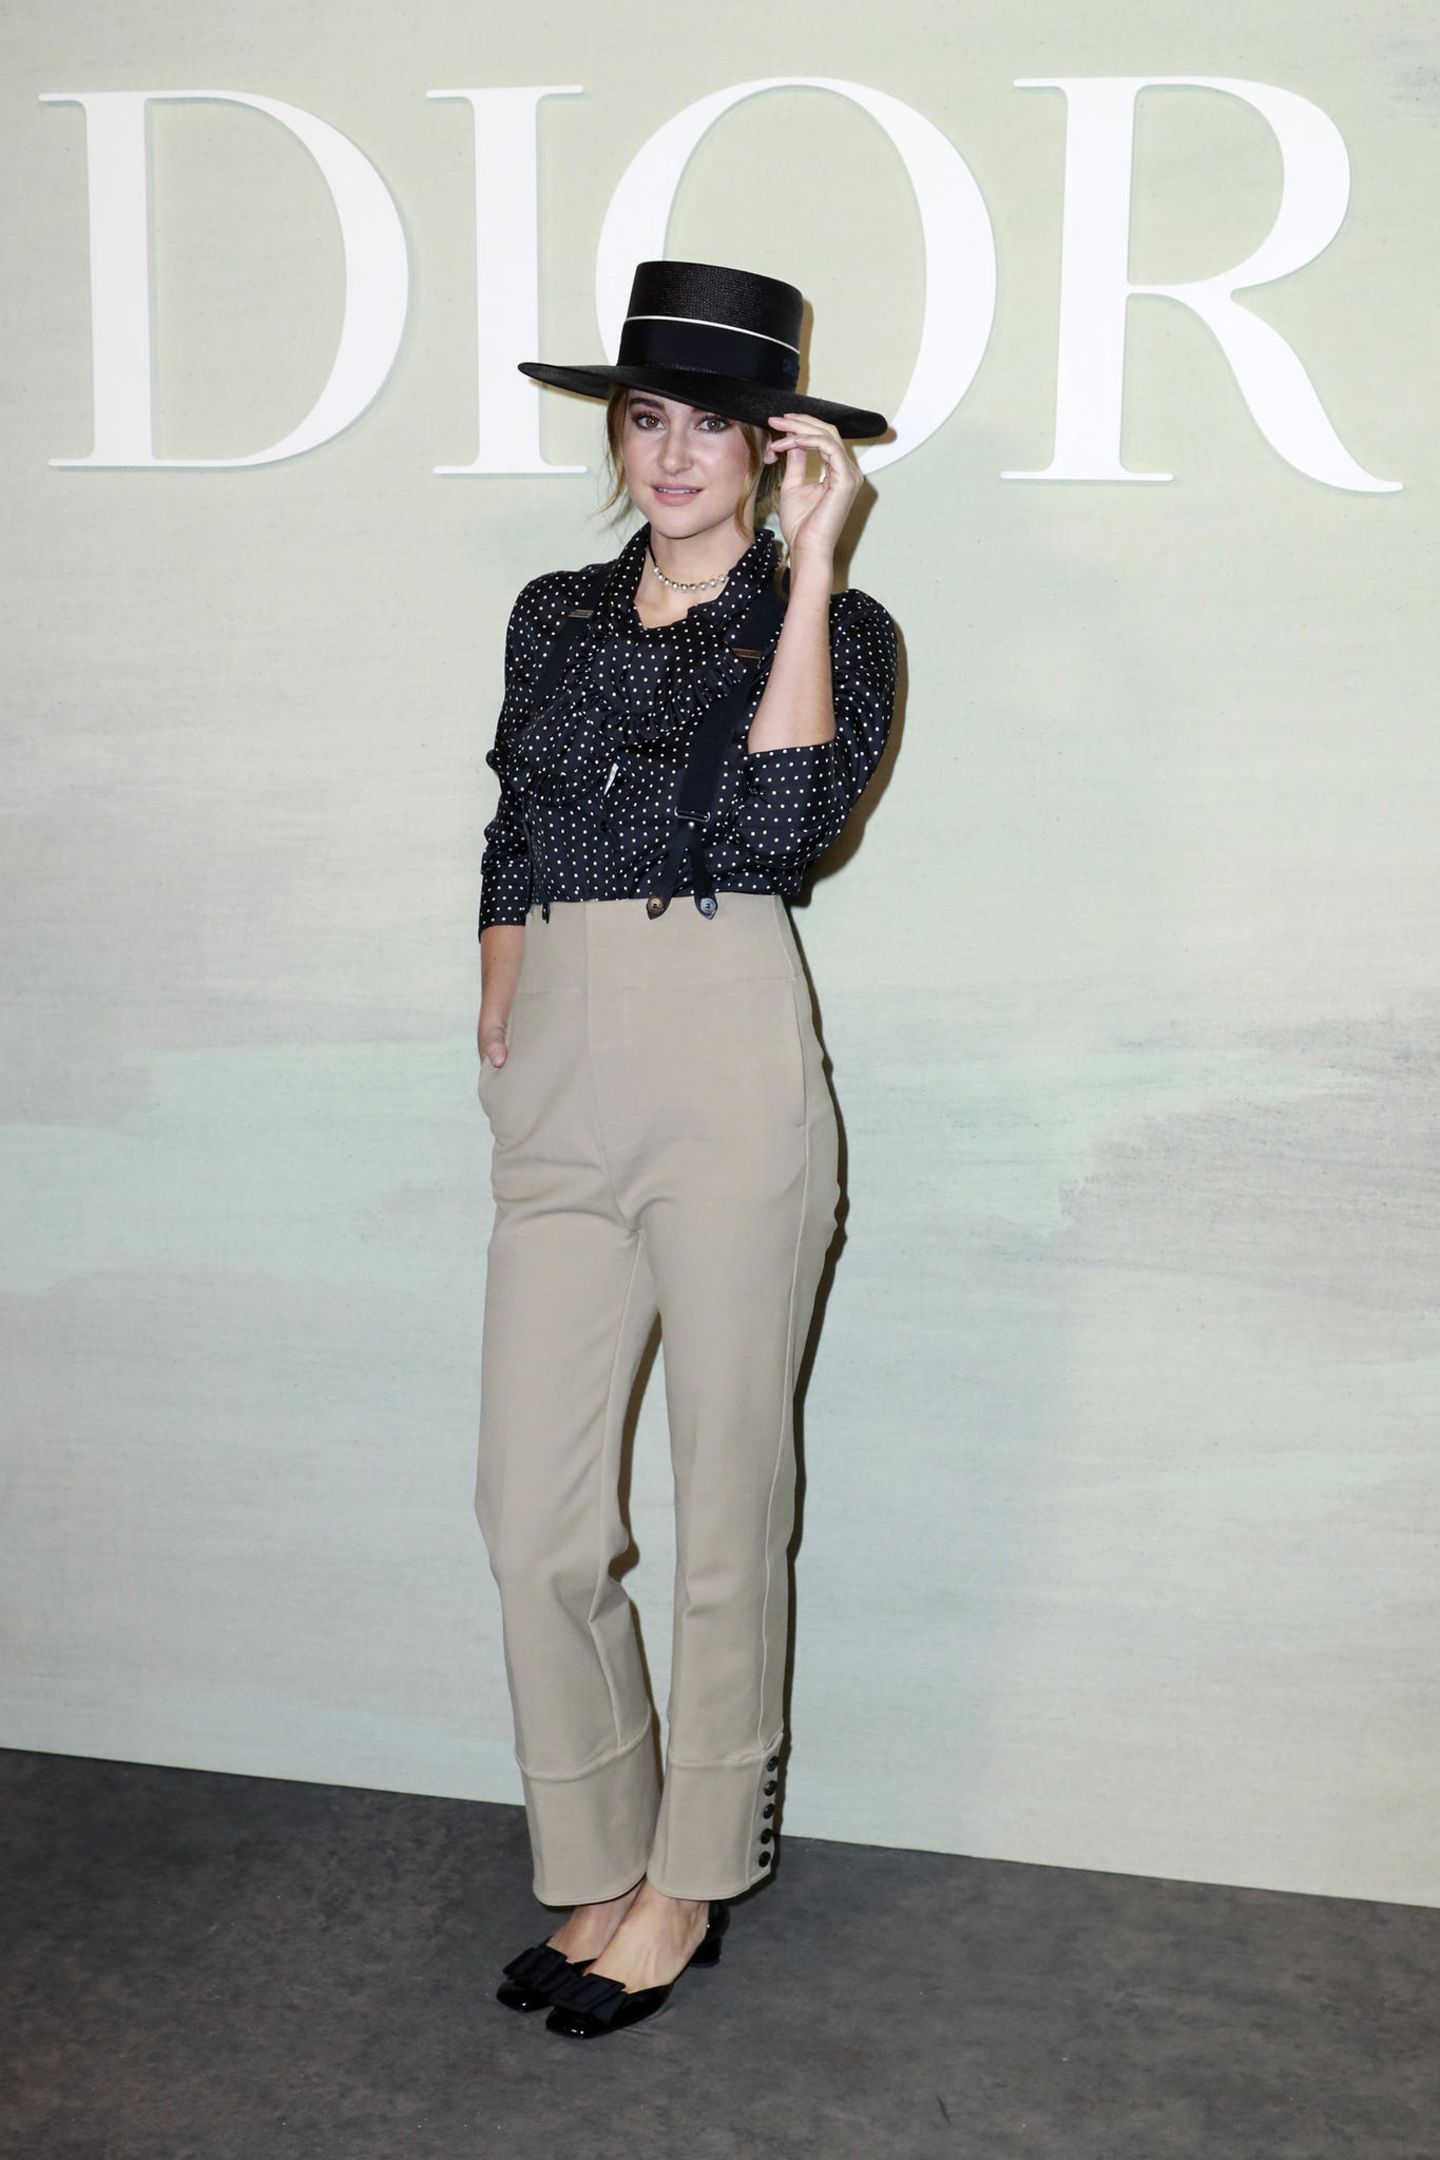 Gleiche Hose, andere Look: Auch Schauspielerin Shailene Woodley setzt auf die beige Hose von Dior, kombiniert diese jedoch klassischer und zeigt sich mit Polka-Dot-Bluse, Hut und Perlenkette vor der Sping/Summer-Show von Dior.